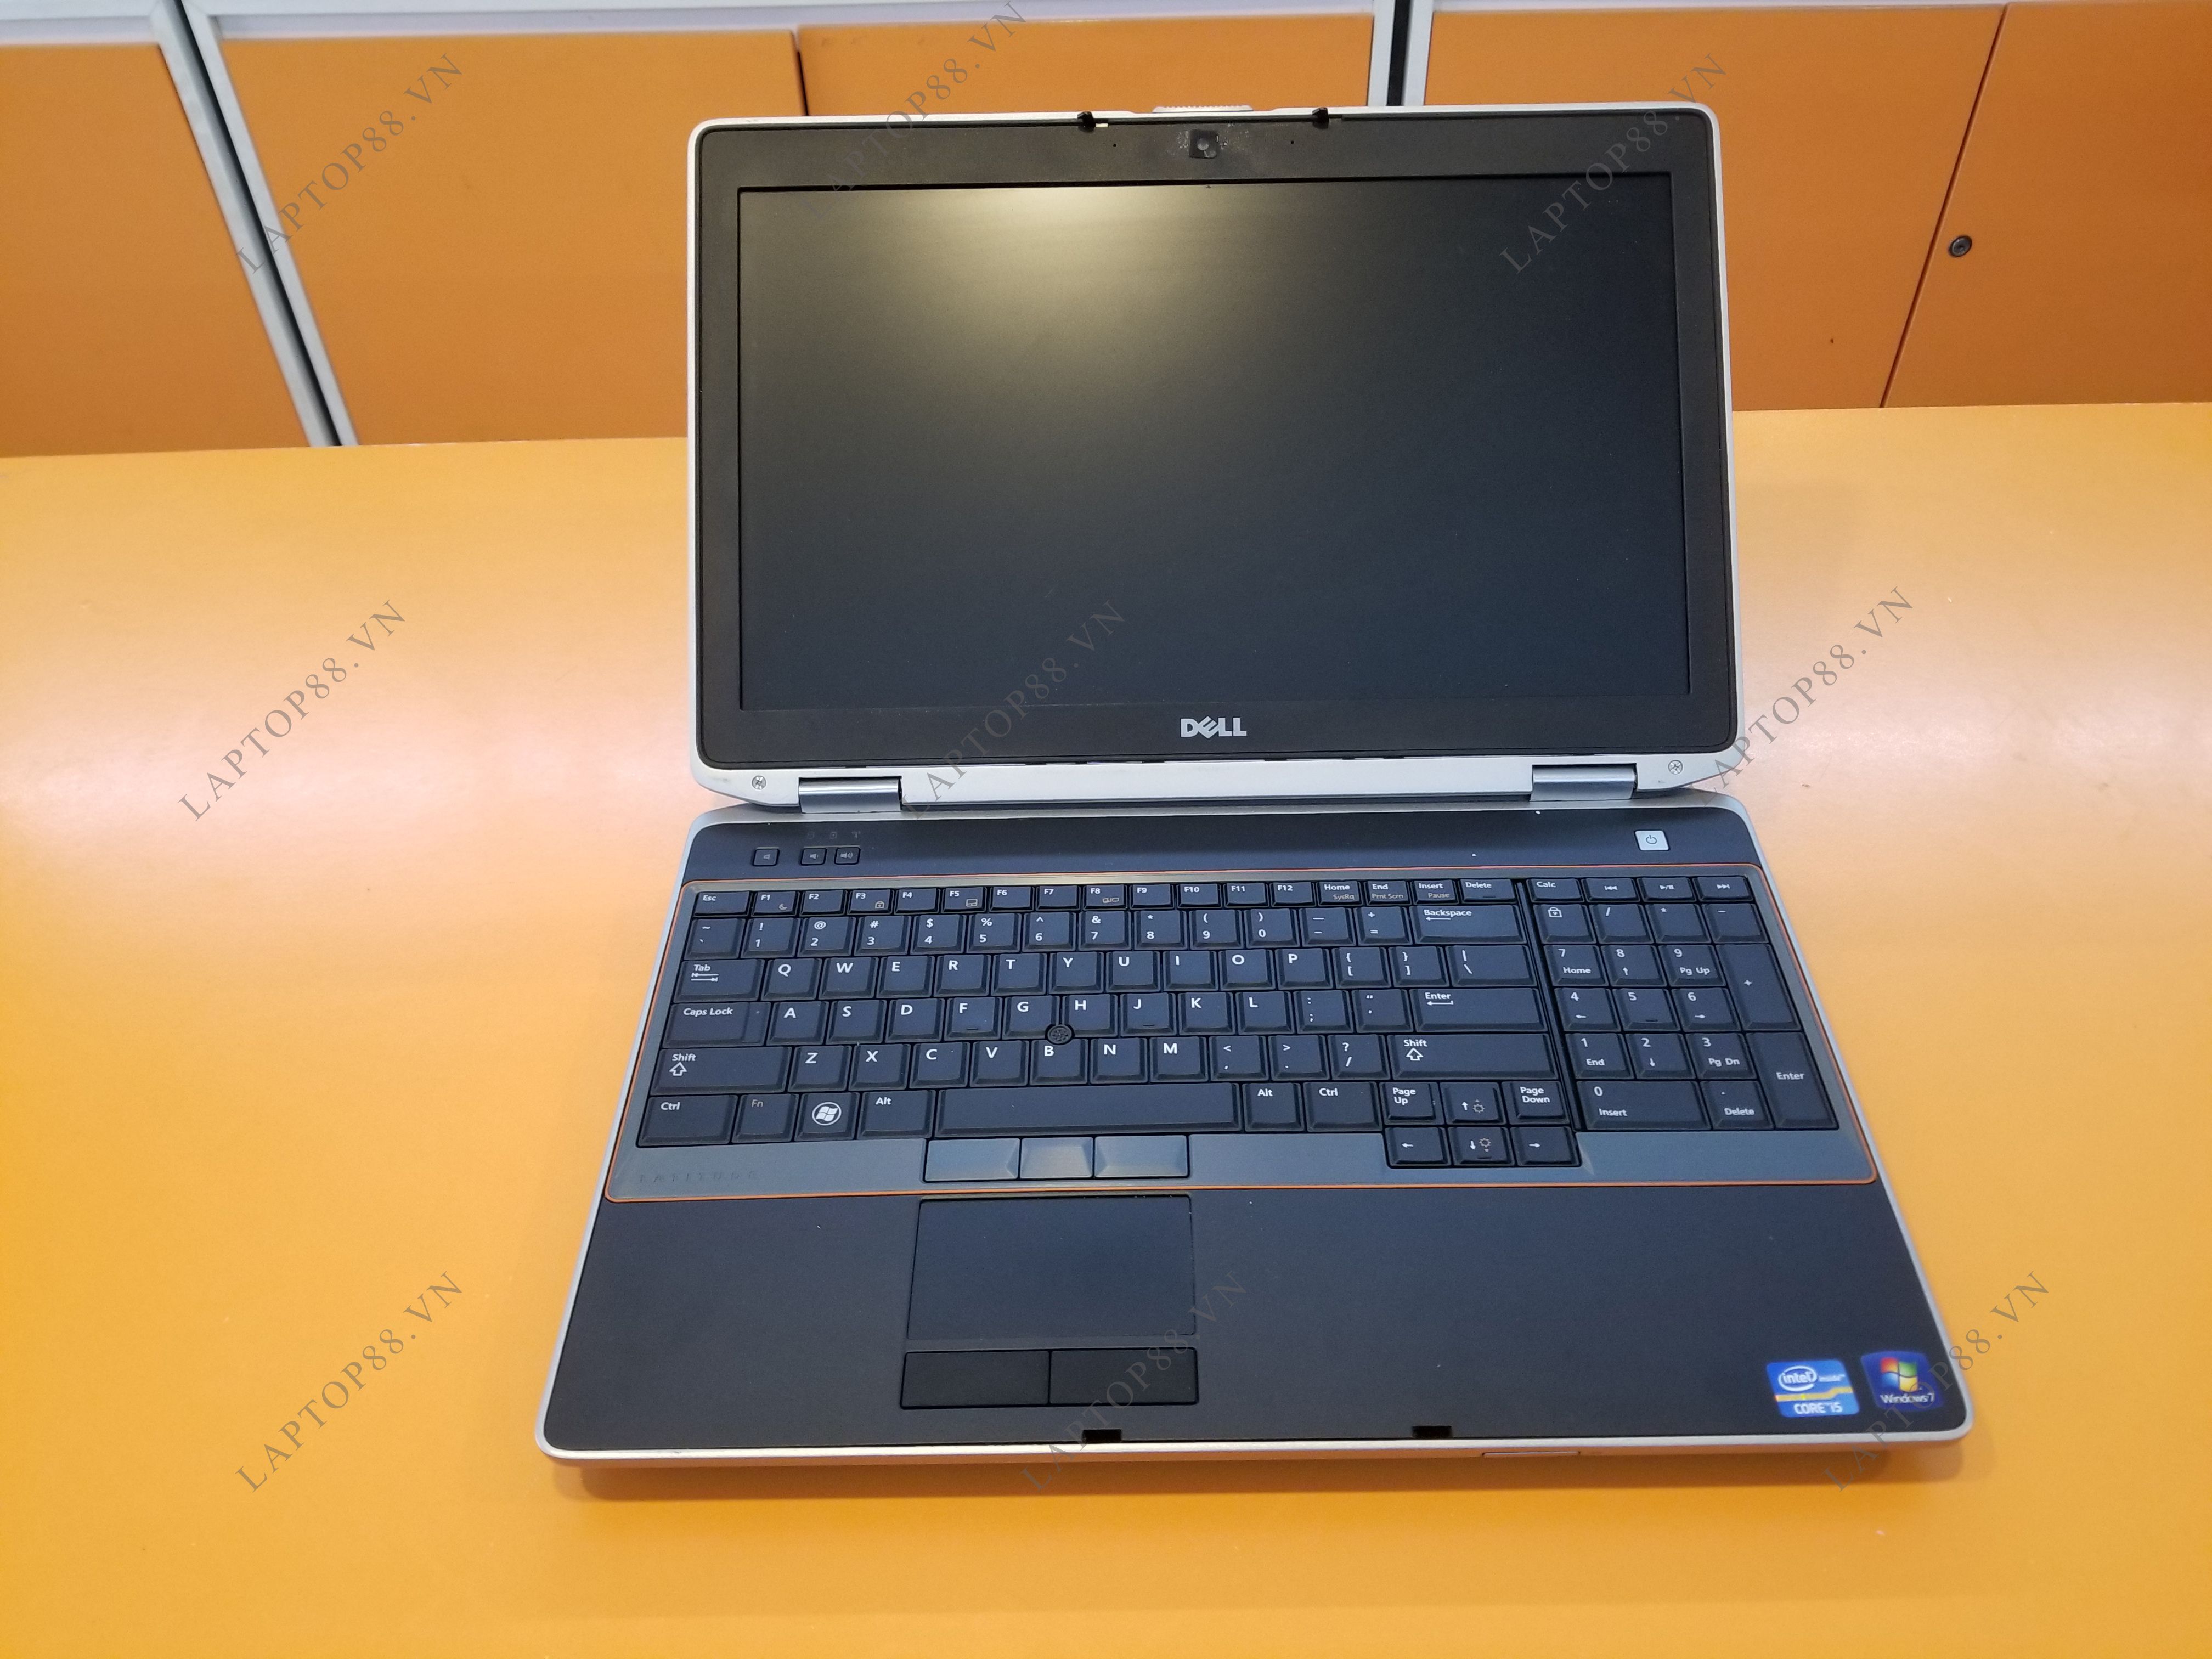 Laptop cũ Dell E6520 nhập khẩu từ Mỹ - Bảo hành tới 1 năm